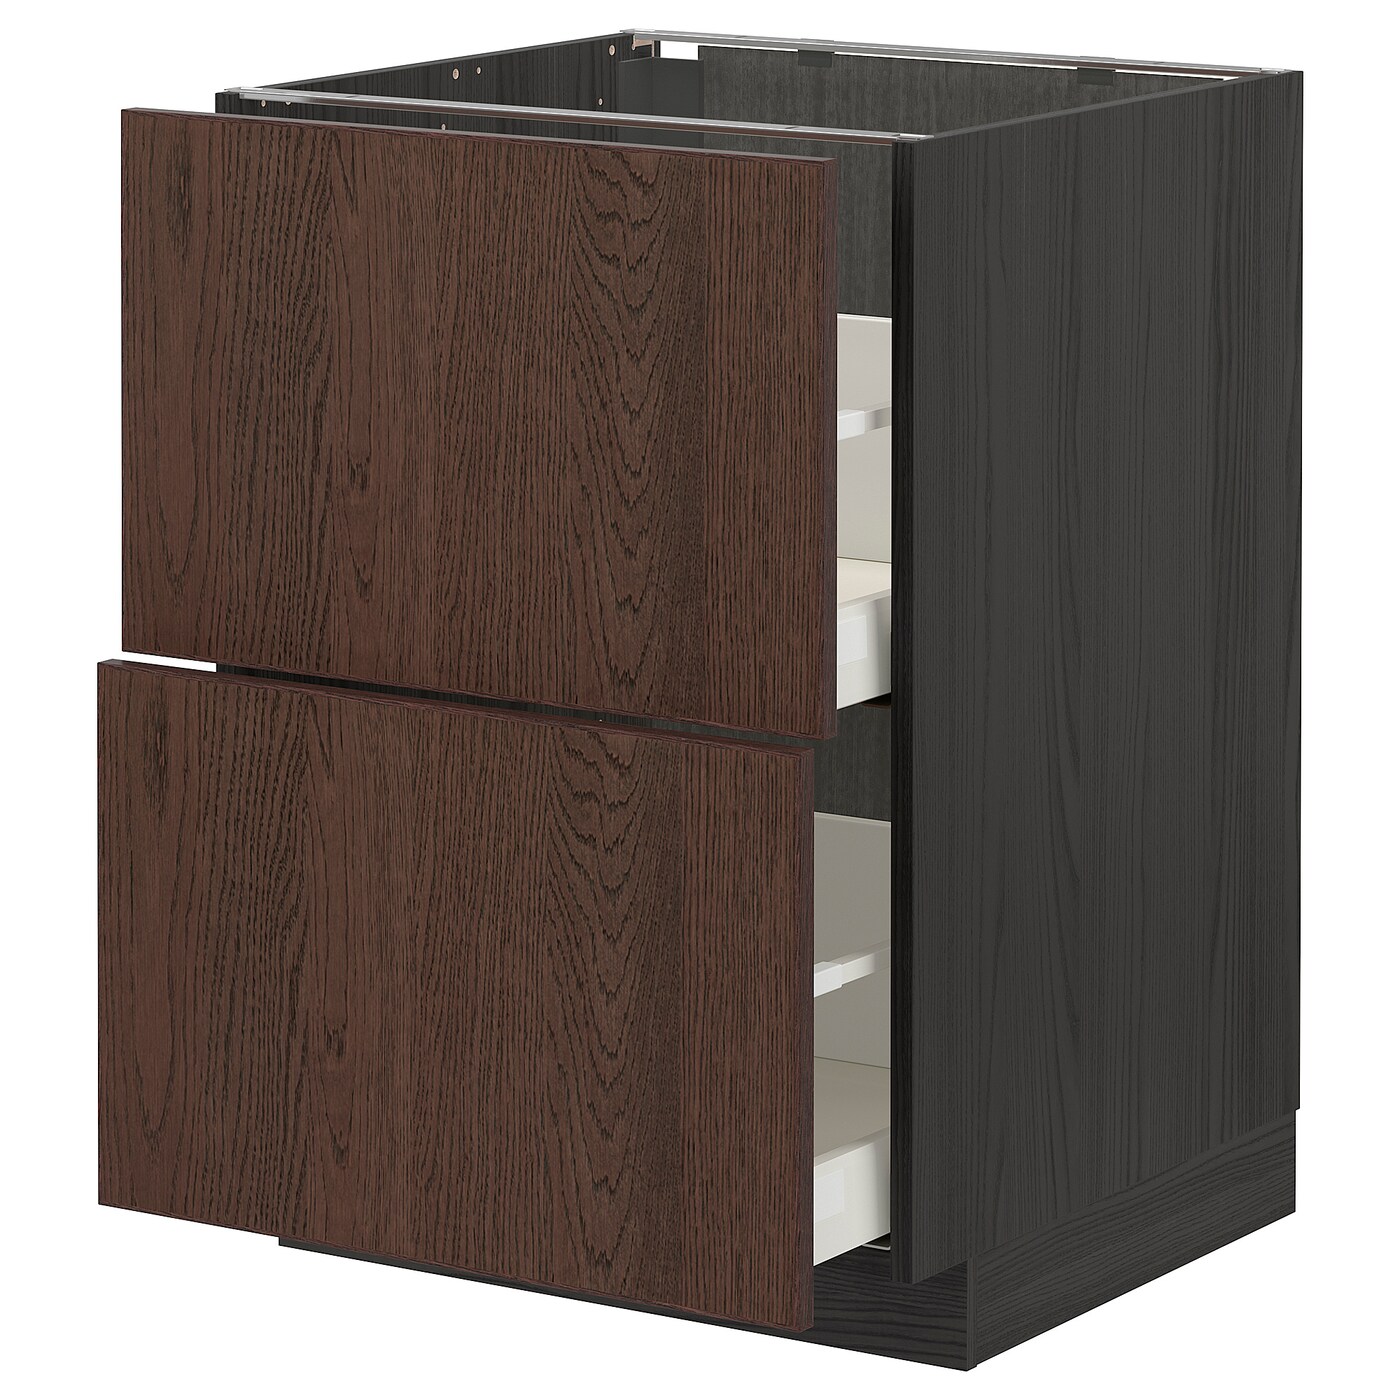 Напольный шкаф  - IKEA METOD MAXIMERA, 88x61,6x60см, черный/коричневый, МЕТОД МАКСИМЕРА ИКЕА